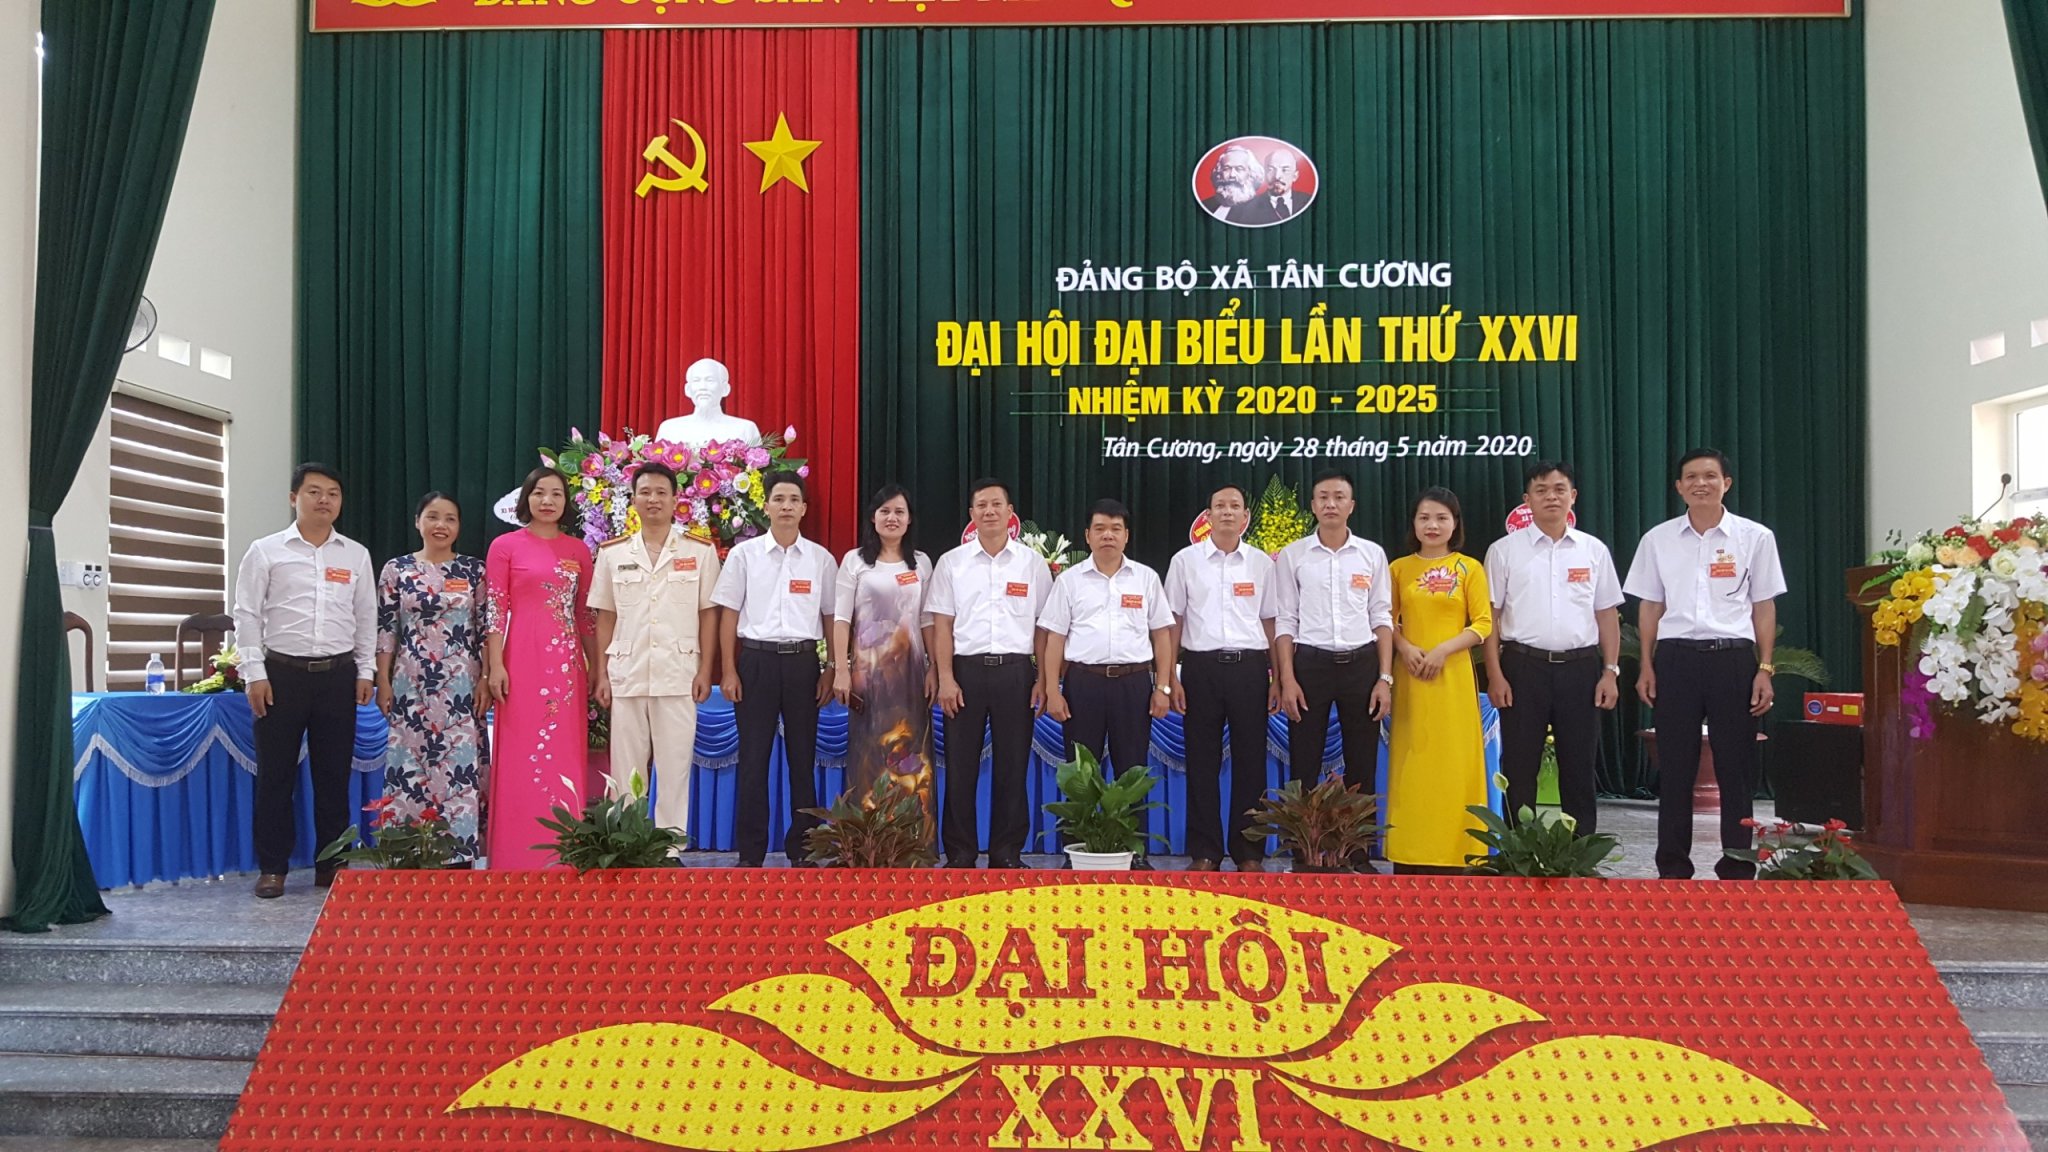 Các đồng chí trong Ban Chấp hành Đảng bộ xã Tân Cương khóa XXVI